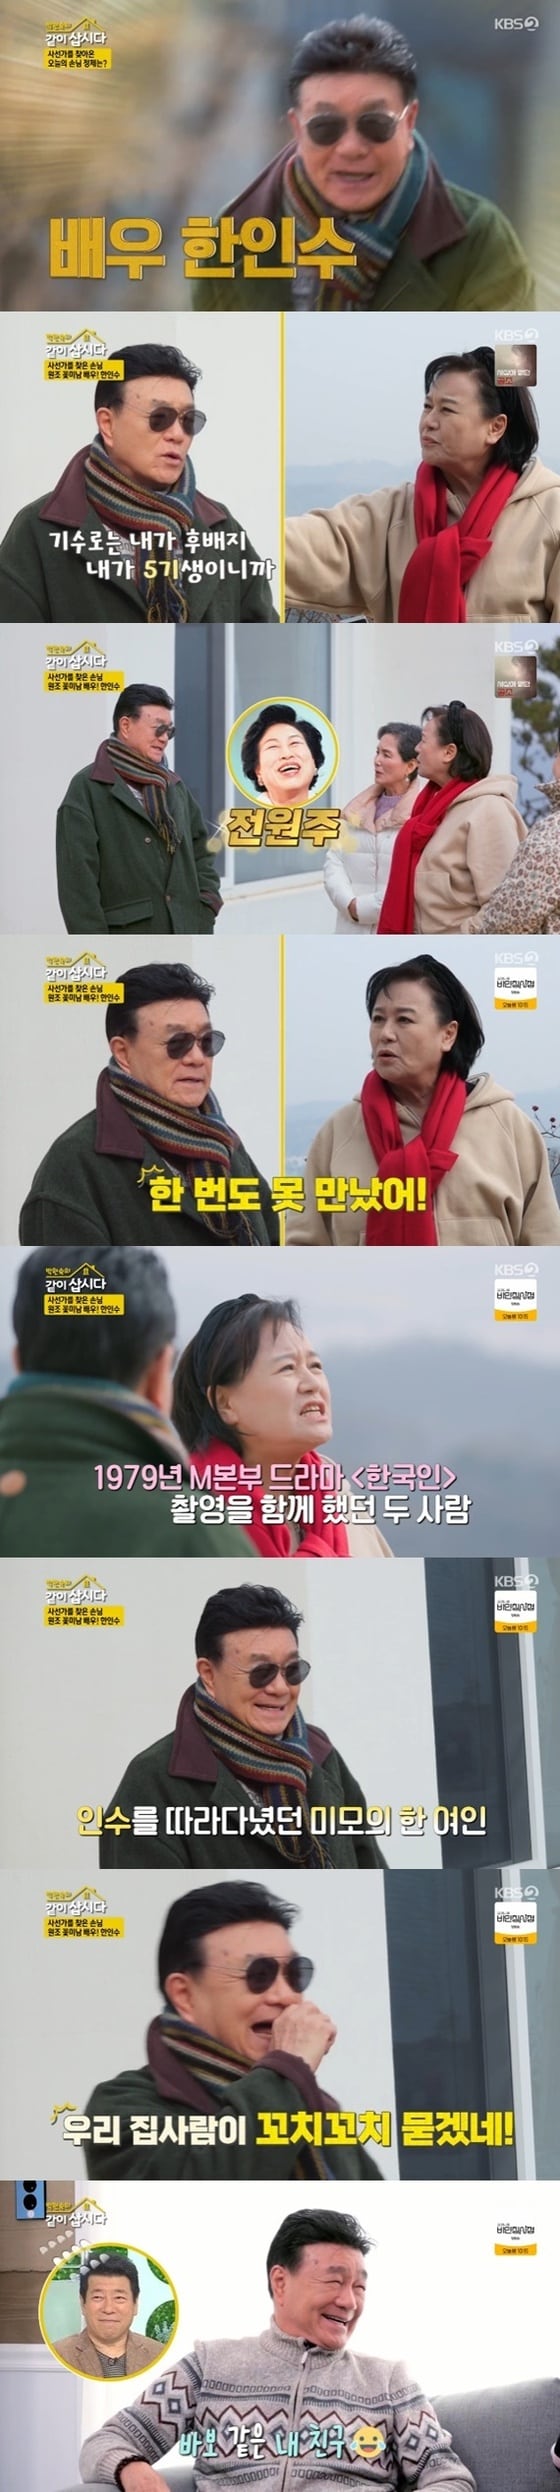 KBS 2TV '박원숙의 같이 삽시다 시즌3' 캡처